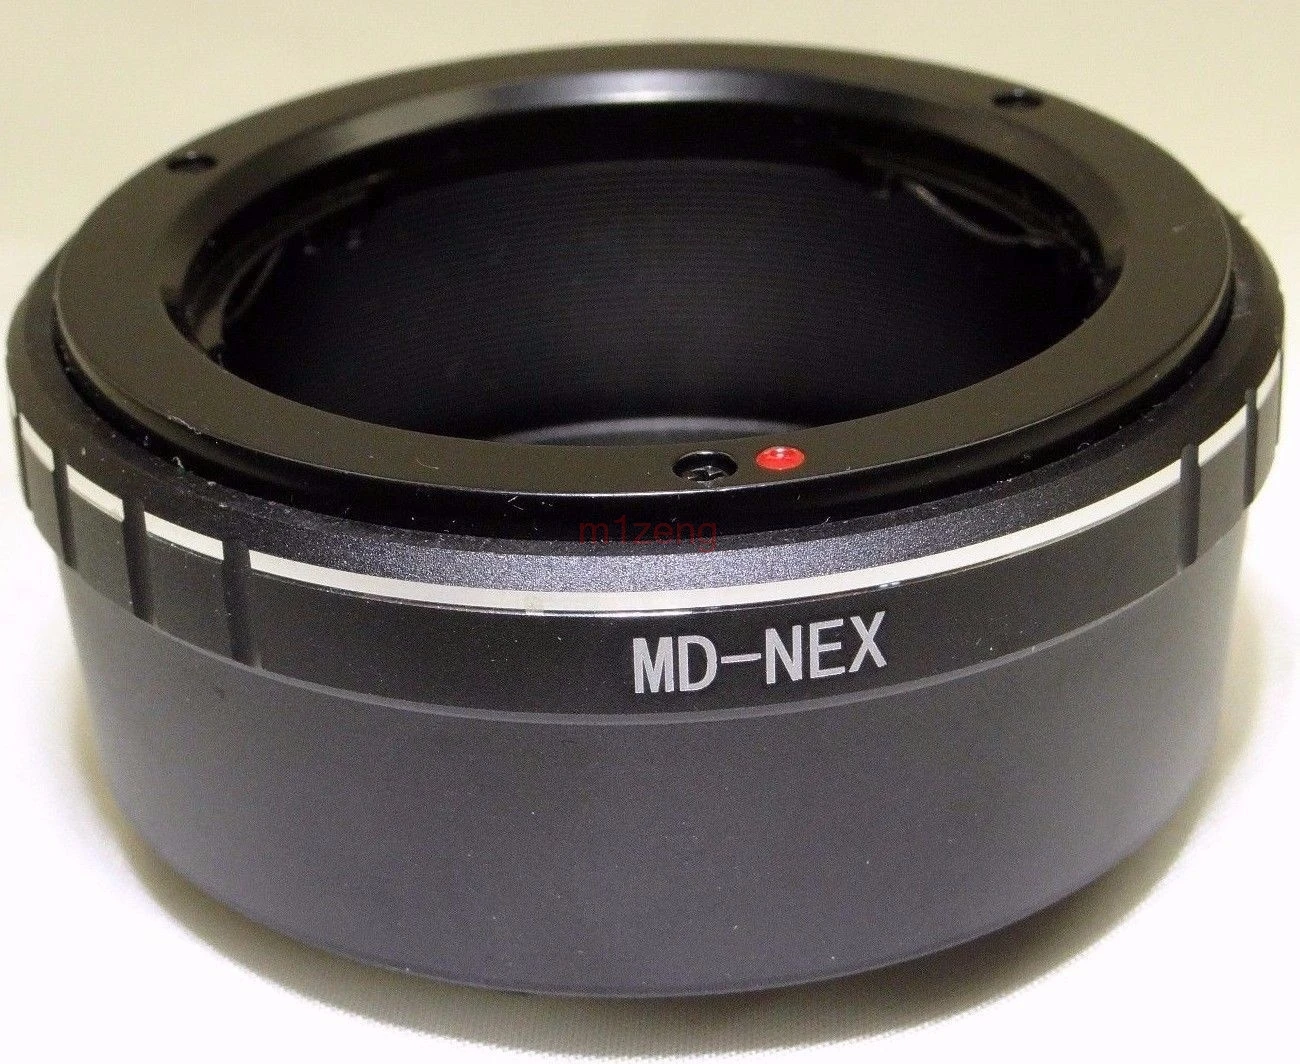 Переходное кольцо с крепление штатива для Minolta MD MC Объектив sony nex a5100 a6000 a6300 a6500 NEX3/5N/7/6/5R a7 a9 a7r2 a7s камера